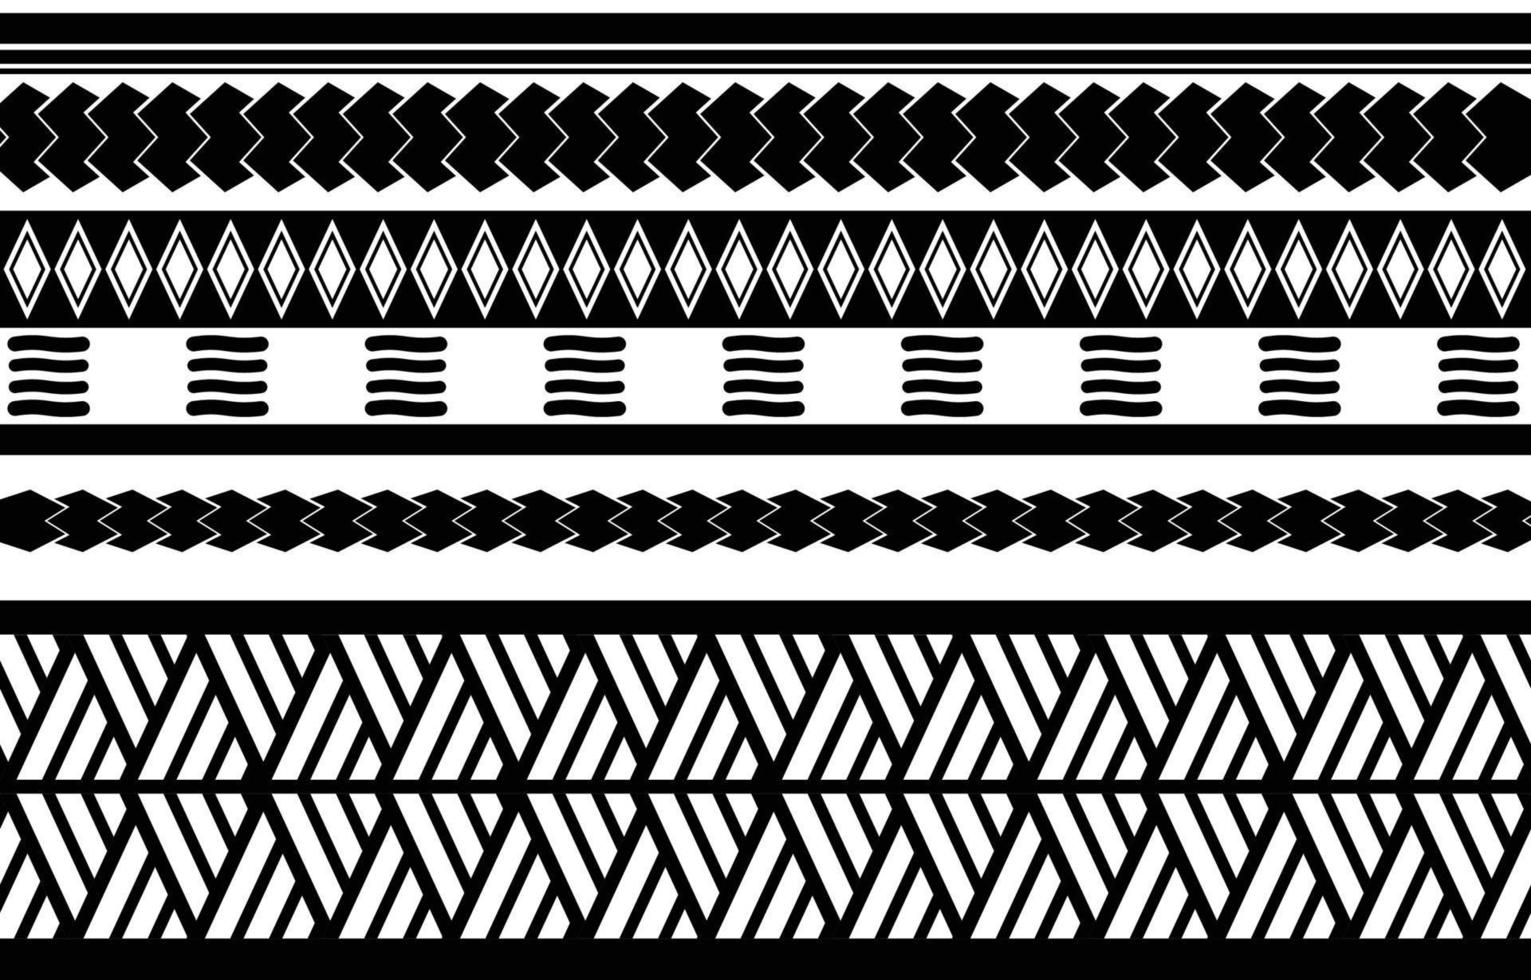 afrikansk tribal svart och vitt abstrakt etniska geometriska mönster. design för bakgrund eller wallpaper.vector illustration för att skriva ut tygmönster, mattor, skjortor, kostymer, turban, hattar, gardiner. vektor